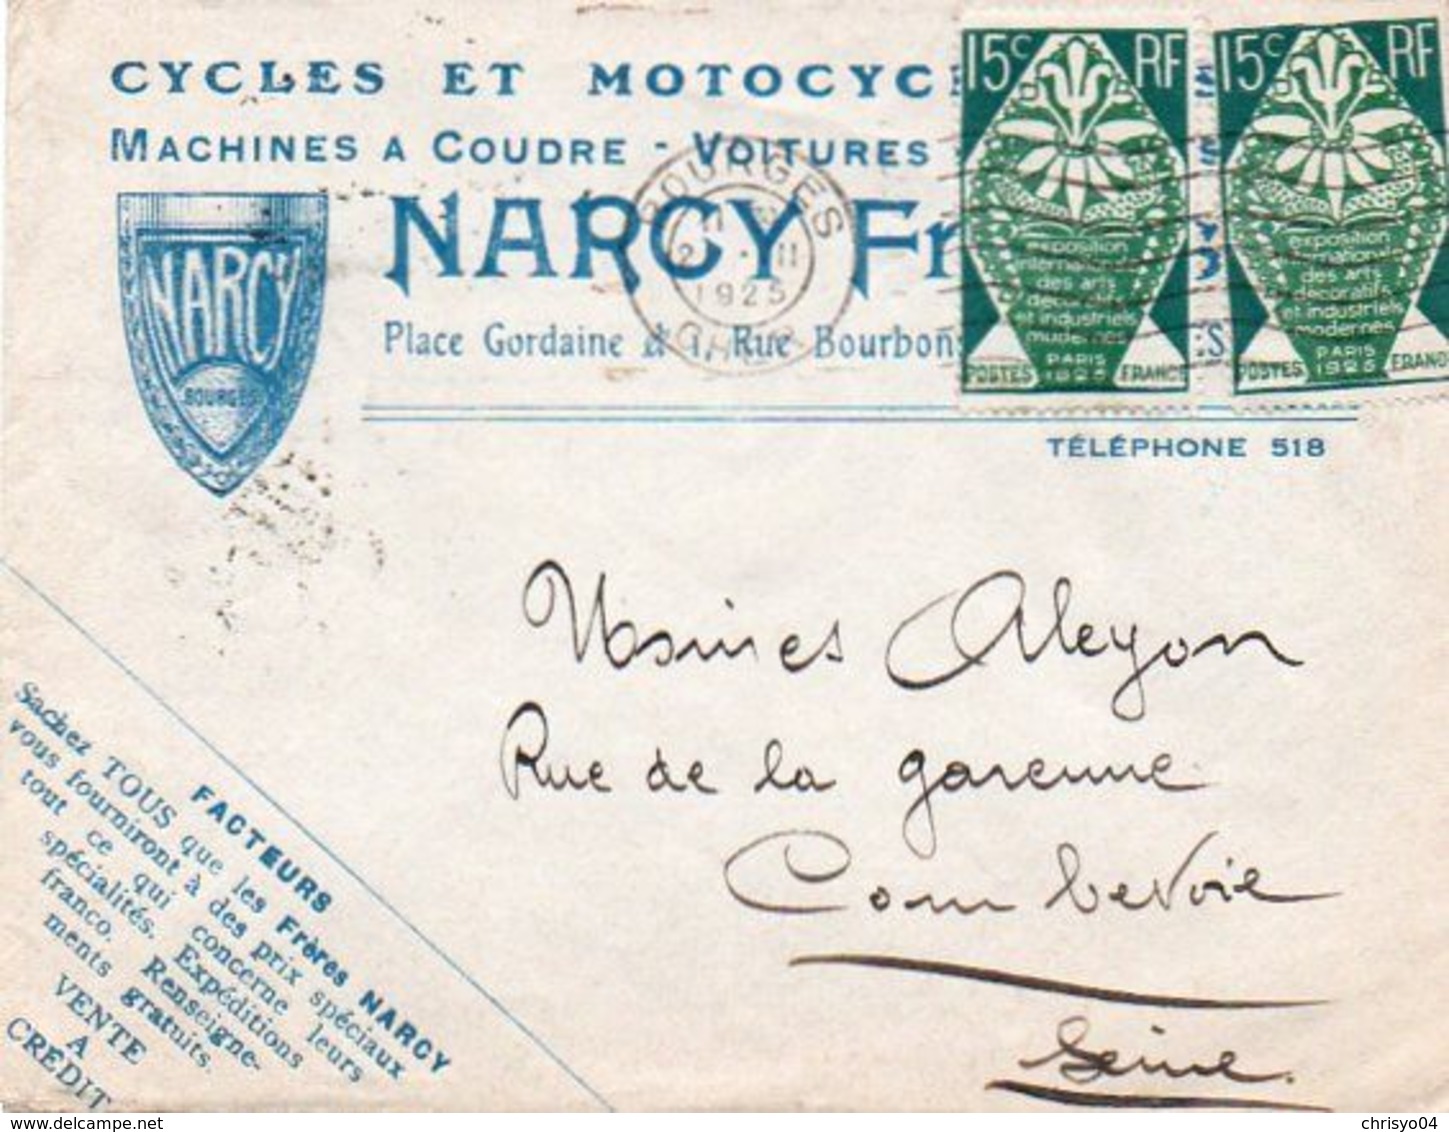 V7S  Enveloppe Timbrée Exposition Paris 1925 Courrier Lettre 18 Bourges Cycles Motos Autos Tacot Narcy Vente à Crédit - 1921-1960: Période Moderne